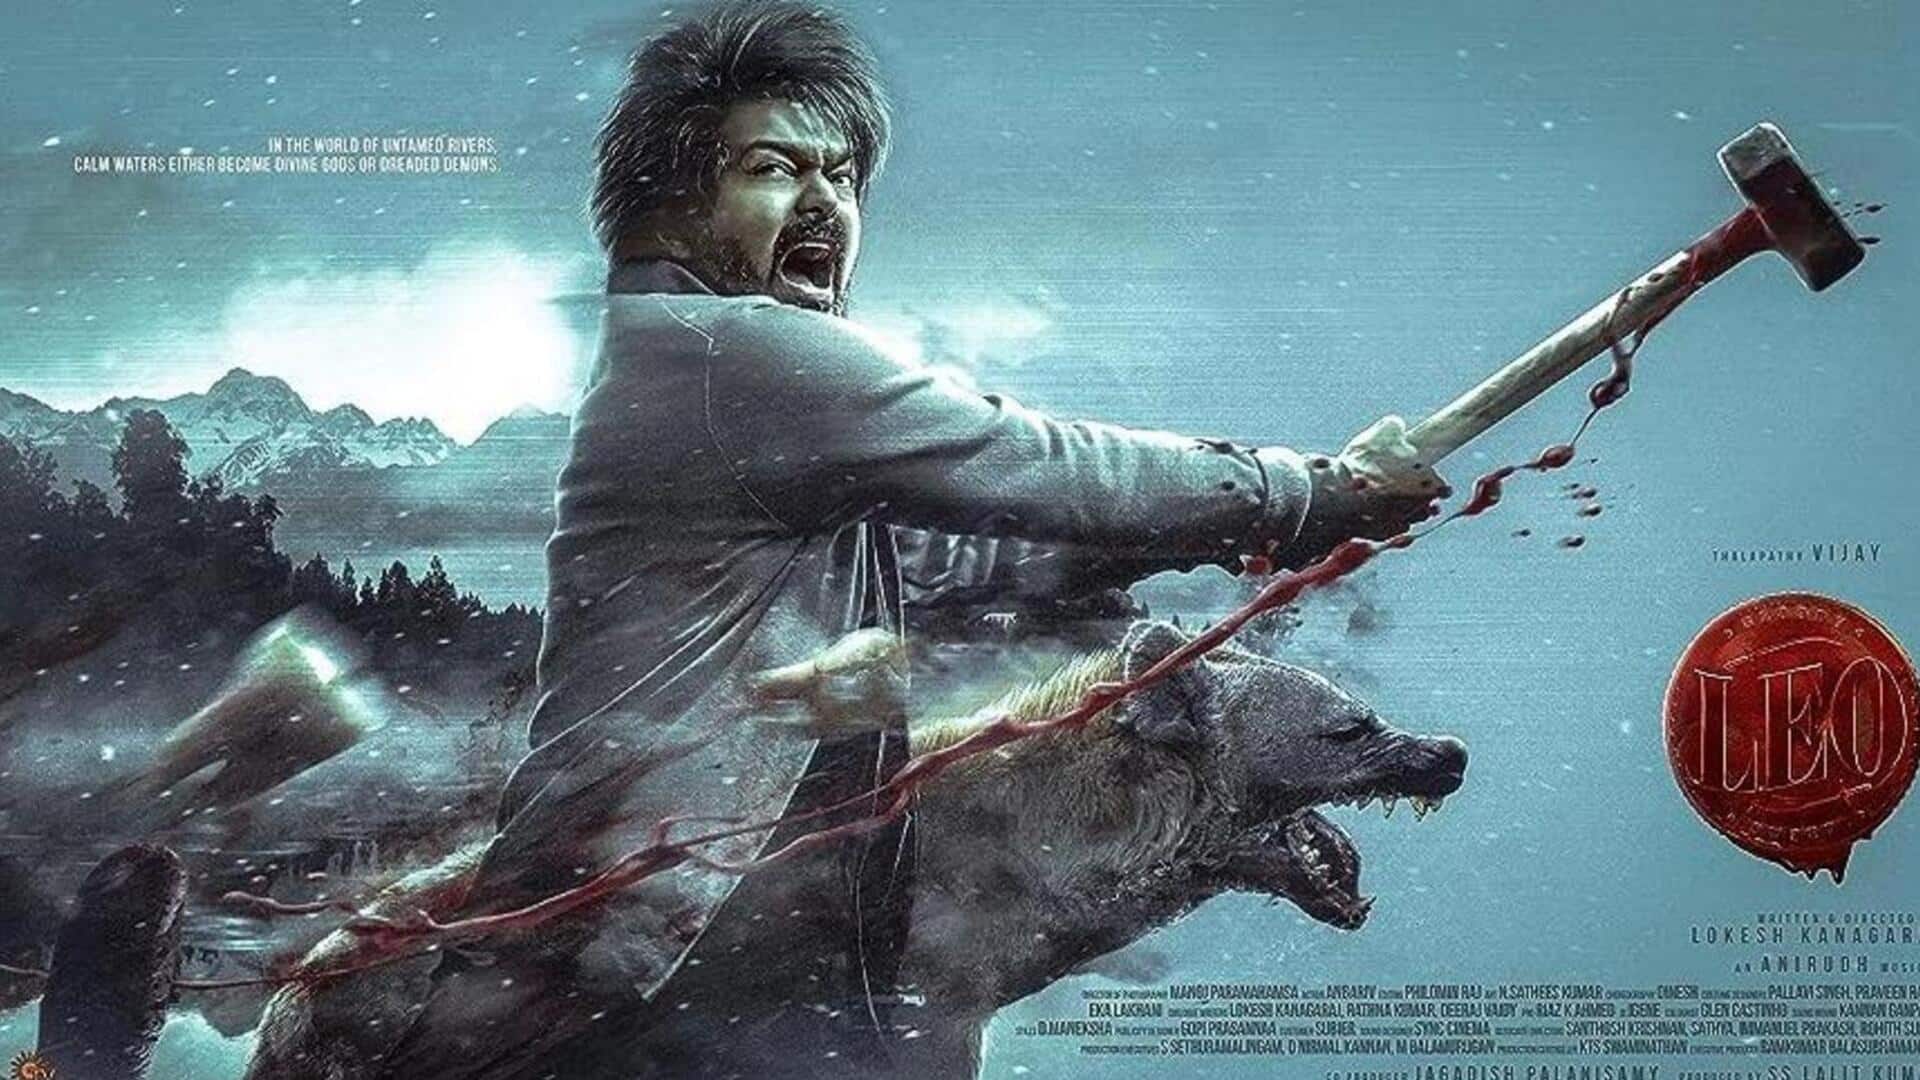 Tamil Nadu government approves special screenings for Vijay-Lokesh Kanagaraj's 'Leo'